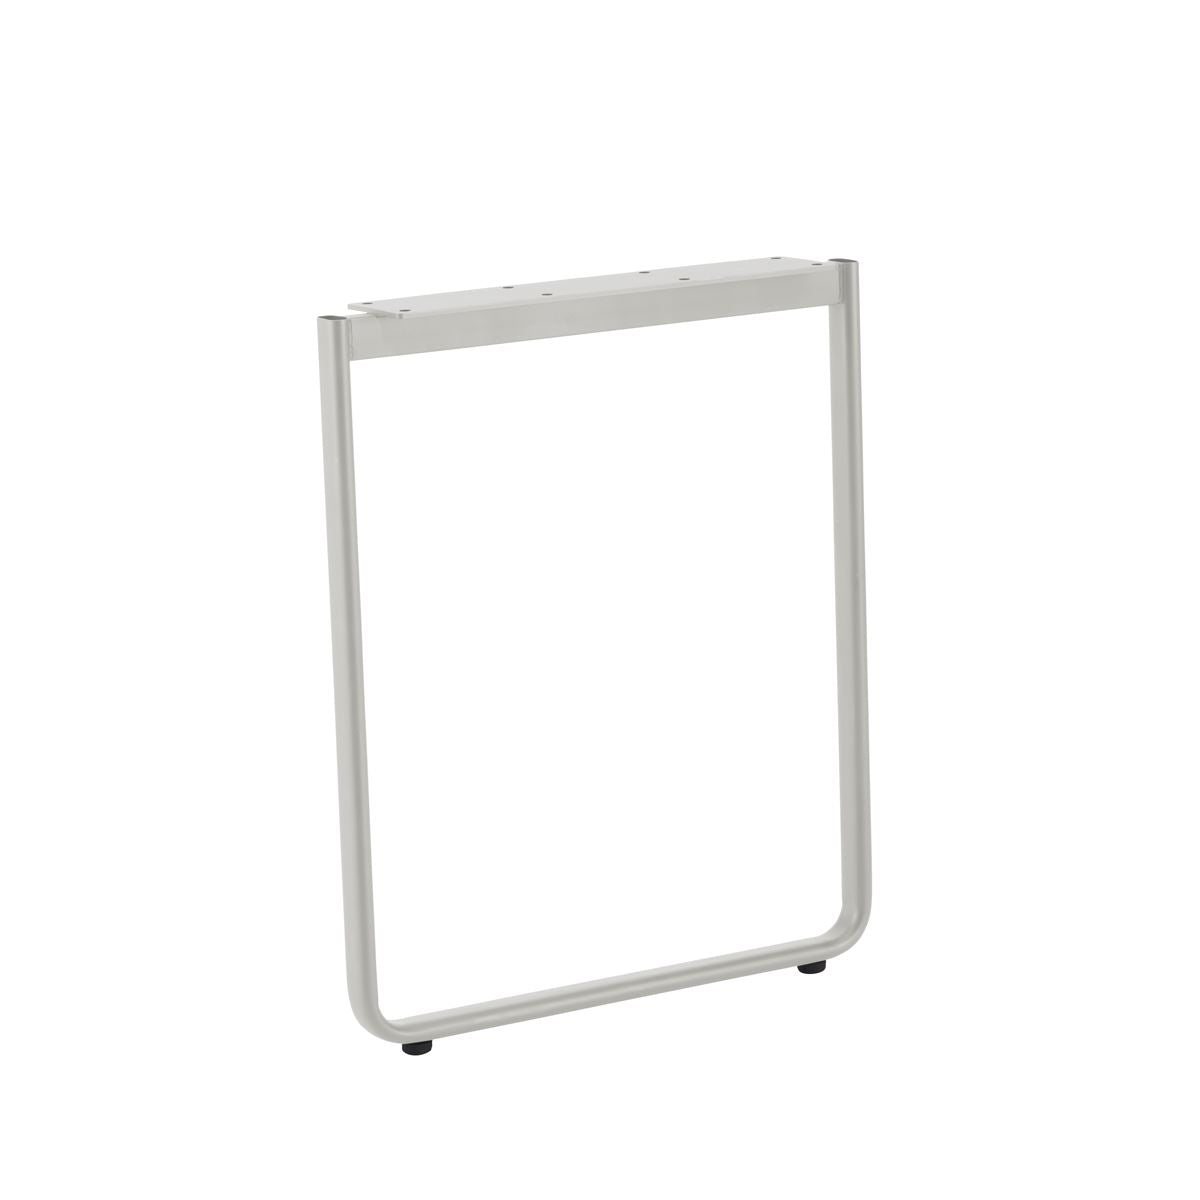 KUUM  Table W1600 × D800 - アッシュ無垢材ナチュラル / クーム テーブル